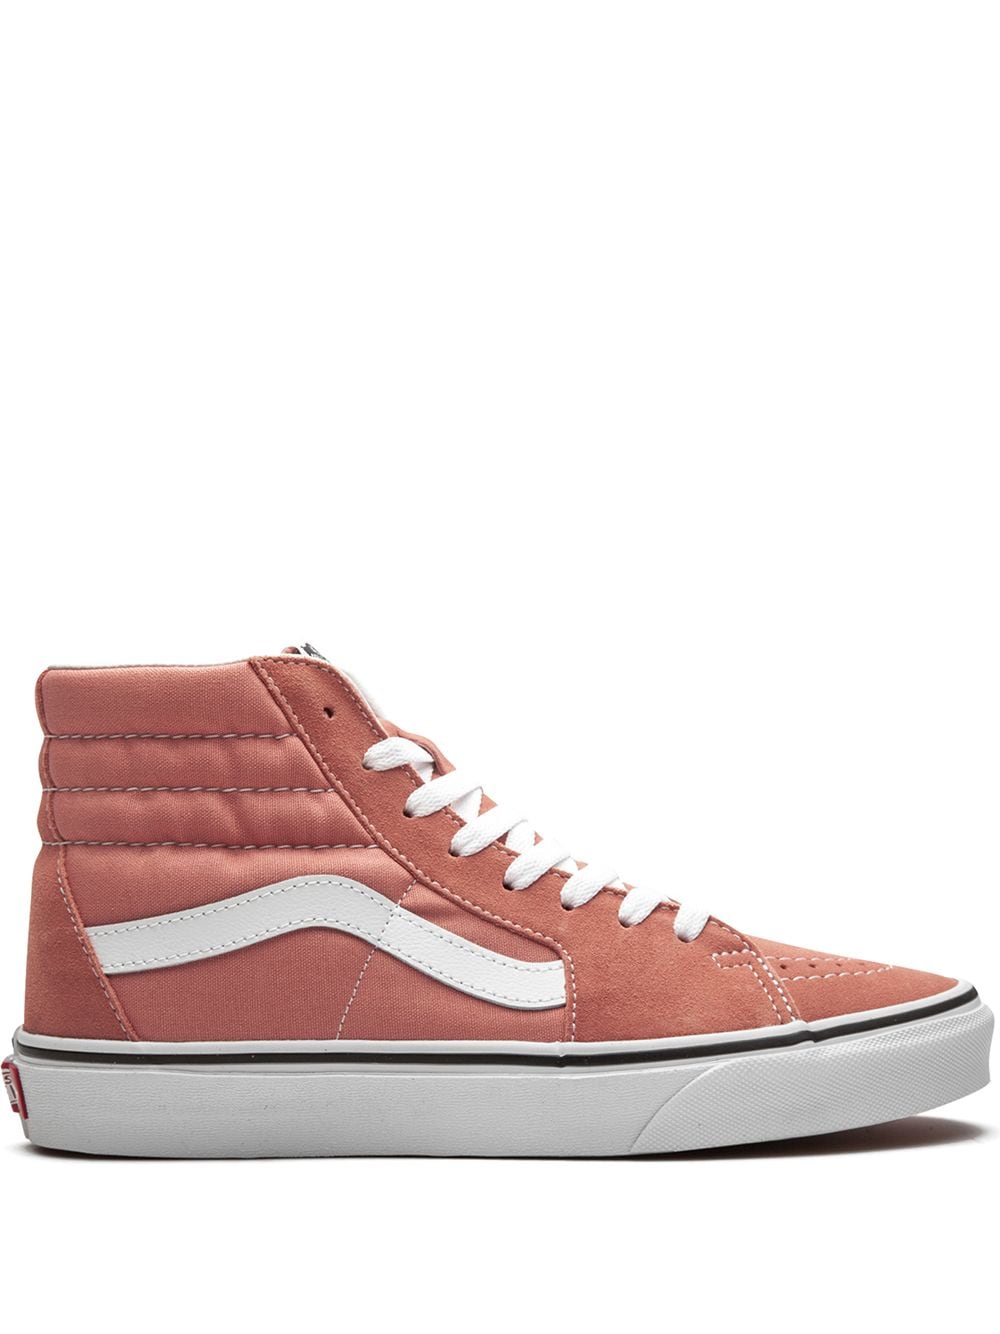 Vans Sk8 Hi suede sneakers - Pink von Vans